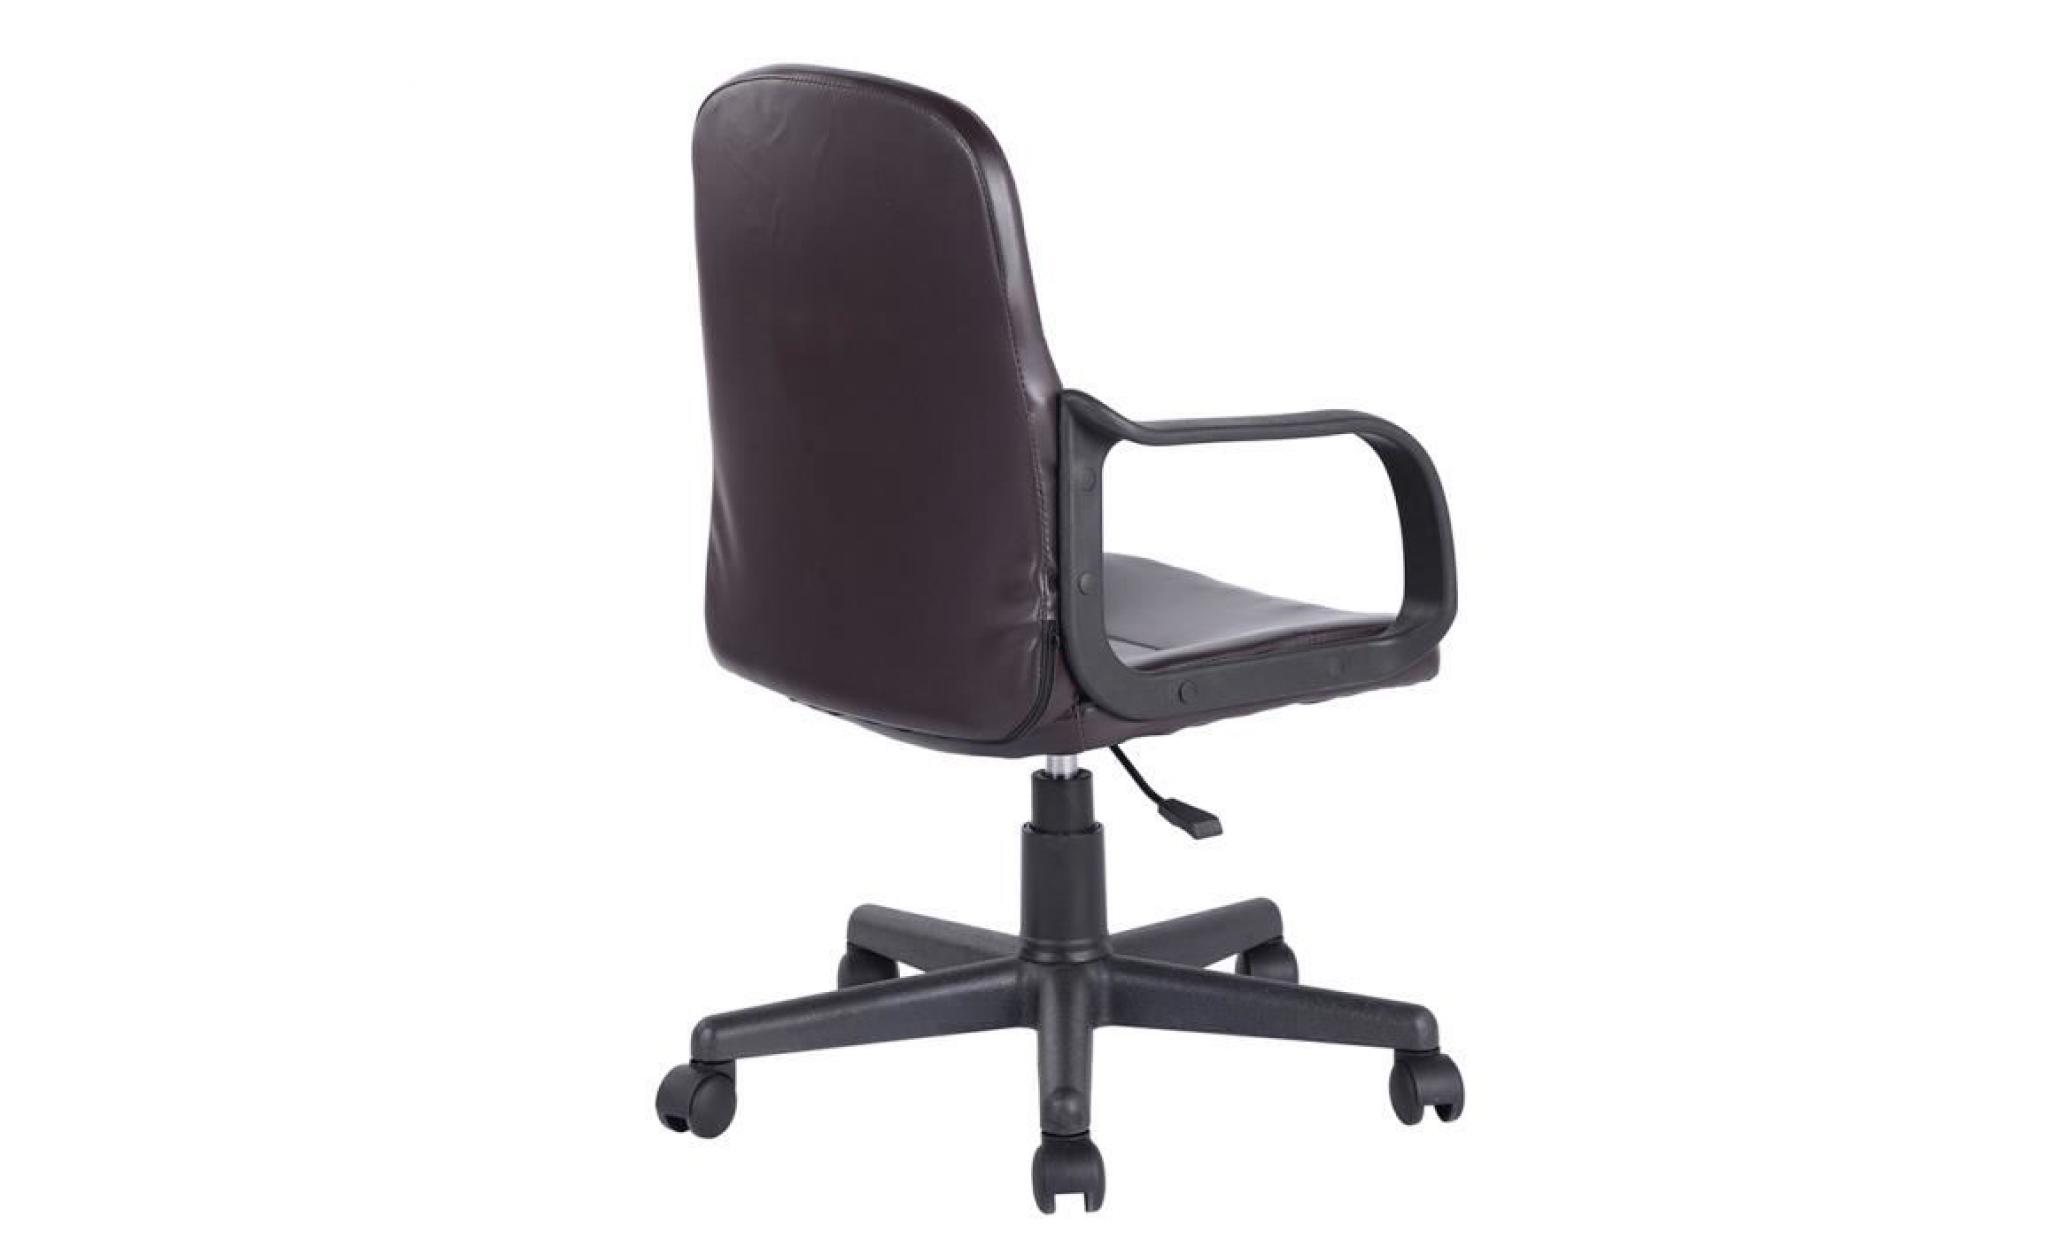 fauteuil de bureau chaise    pvc hauteur réglable roulettes pivotantes    marron    57x56x87 97cm pas cher